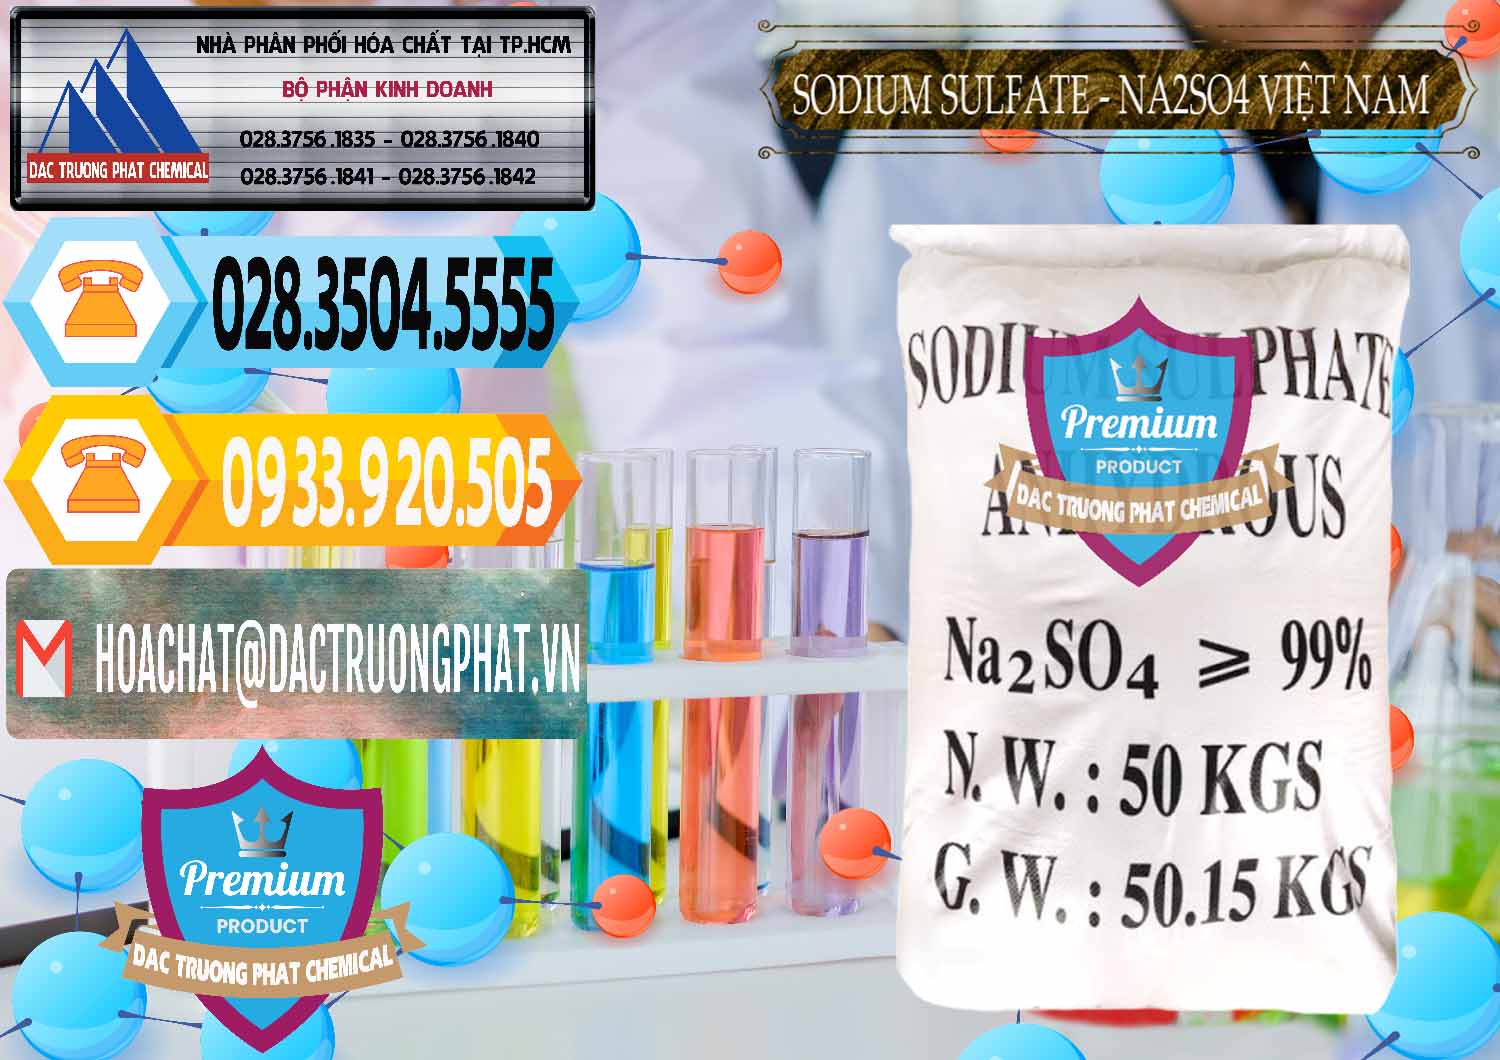 Đơn vị phân phối & bán Sodium Sulphate - Muối Sunfat Na2SO4 Việt Nam - 0355 - Nơi cung cấp ( bán ) hóa chất tại TP.HCM - hoachattayrua.net